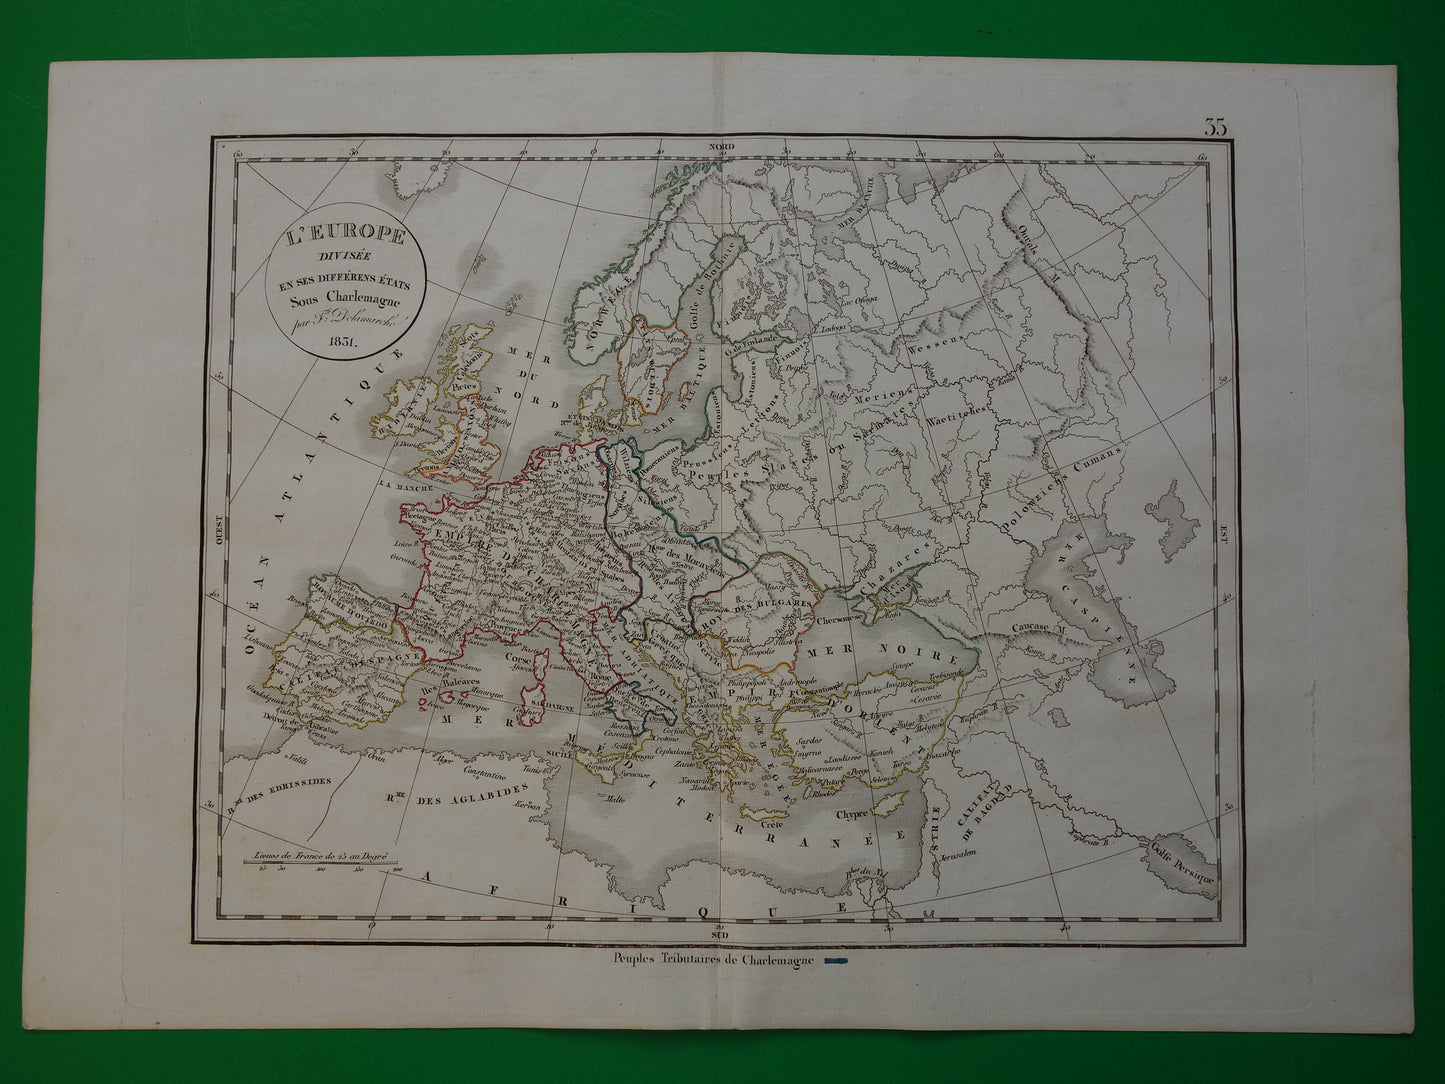 Oude kaart EUROPA tijdens Karel de Grote Antieke landkaart van continent begin 9e eeuw originele vintage historische kaarten Rijk Carolus Magnus